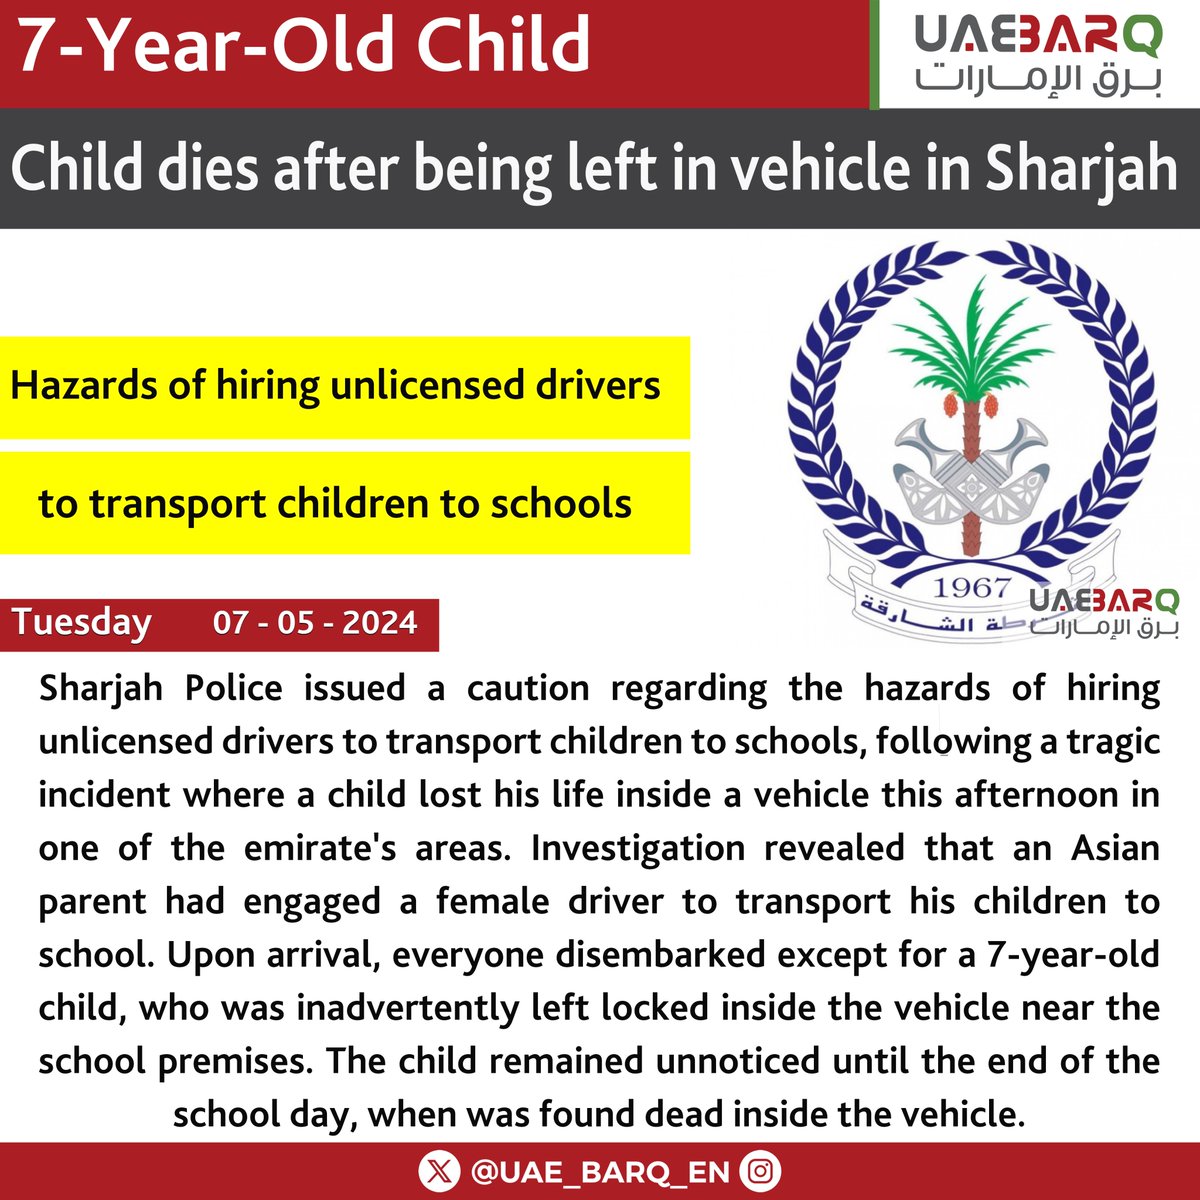 Child dies after being left in vehicle in #Sharjah. #UAE_BARQ_EN